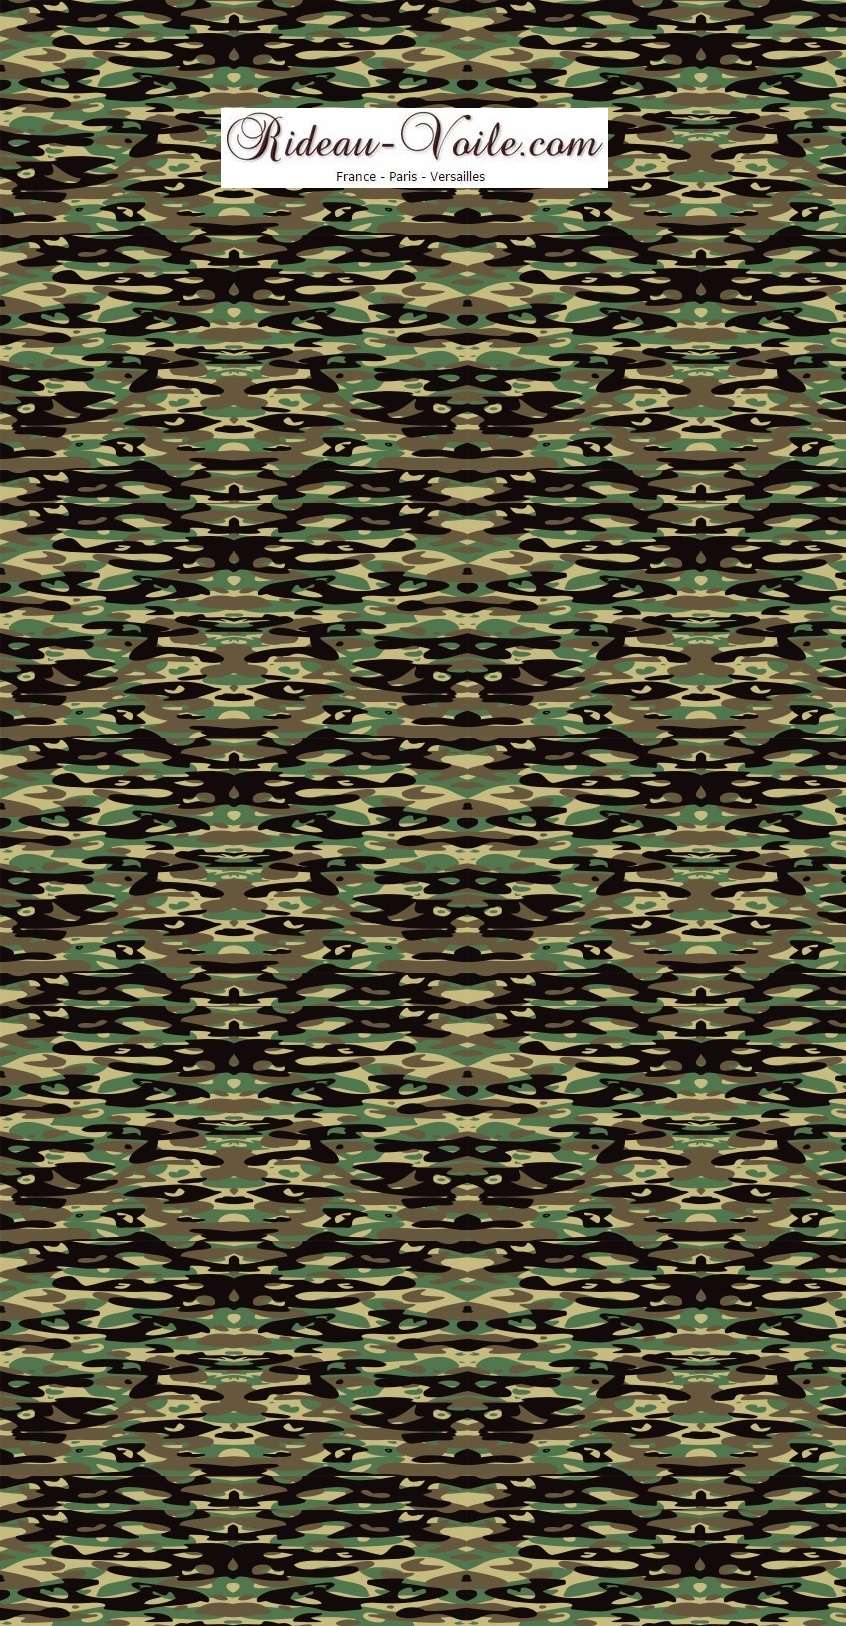 textile camouflage militaire armée ameublement ignifuge non feu coussin bedroom housse de couette motif imprimé tissu style rideau linge de lit maison haut gamme sur mesure décoration chambre textile